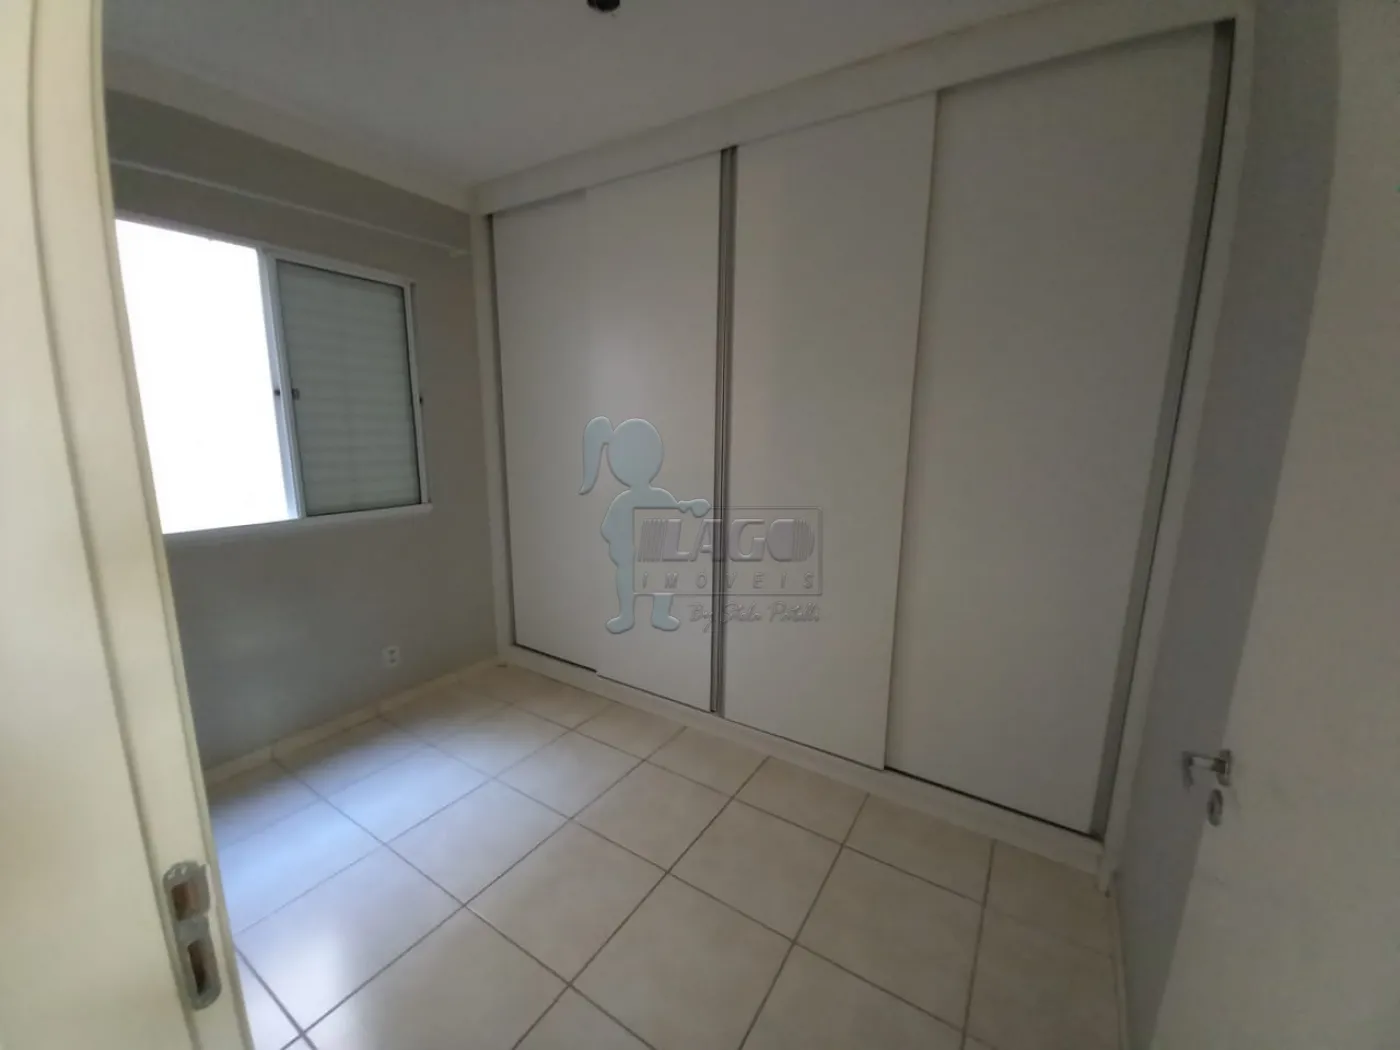 Alugar Apartamento / Padrão em Ribeirão Preto R$ 900,00 - Foto 3